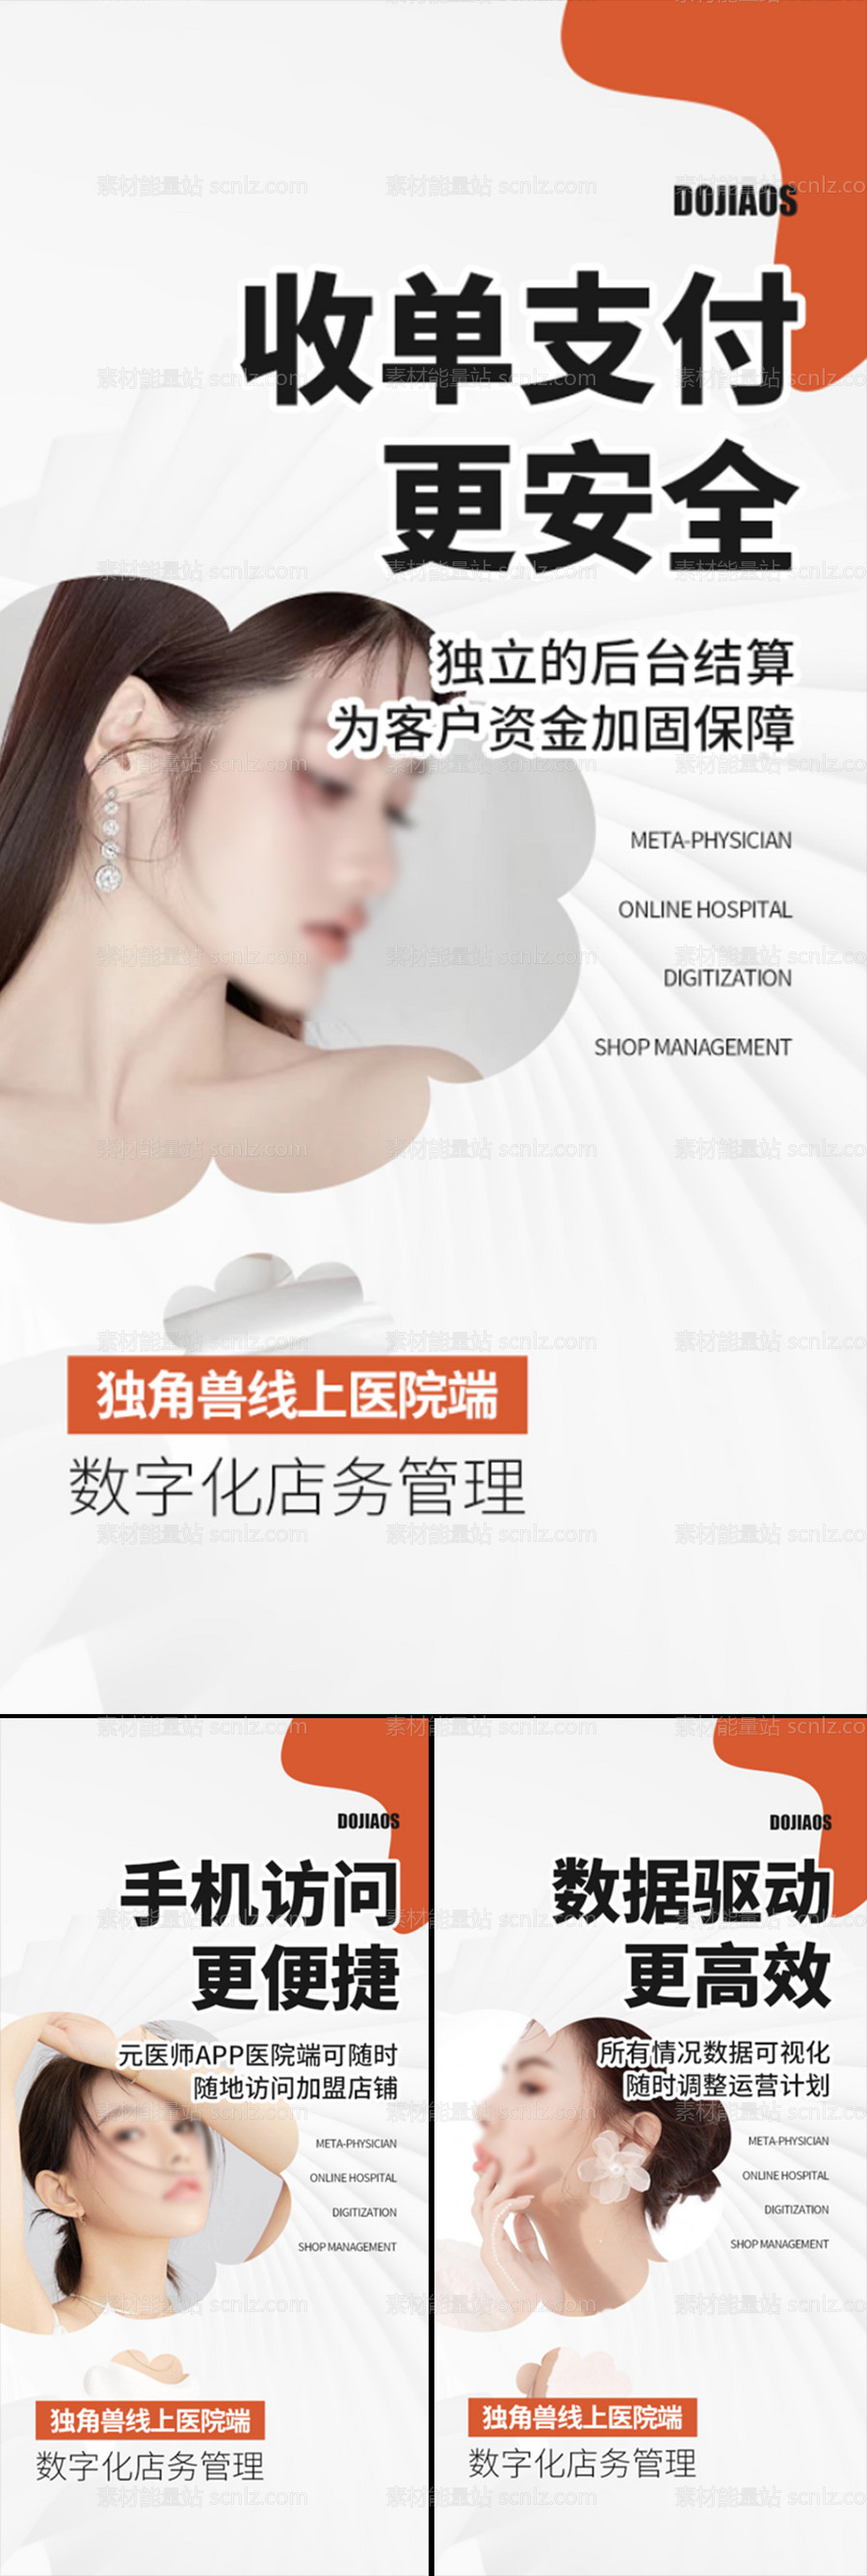 素材能量站-医美招商造势轻奢高端美业创业模特圈图海报